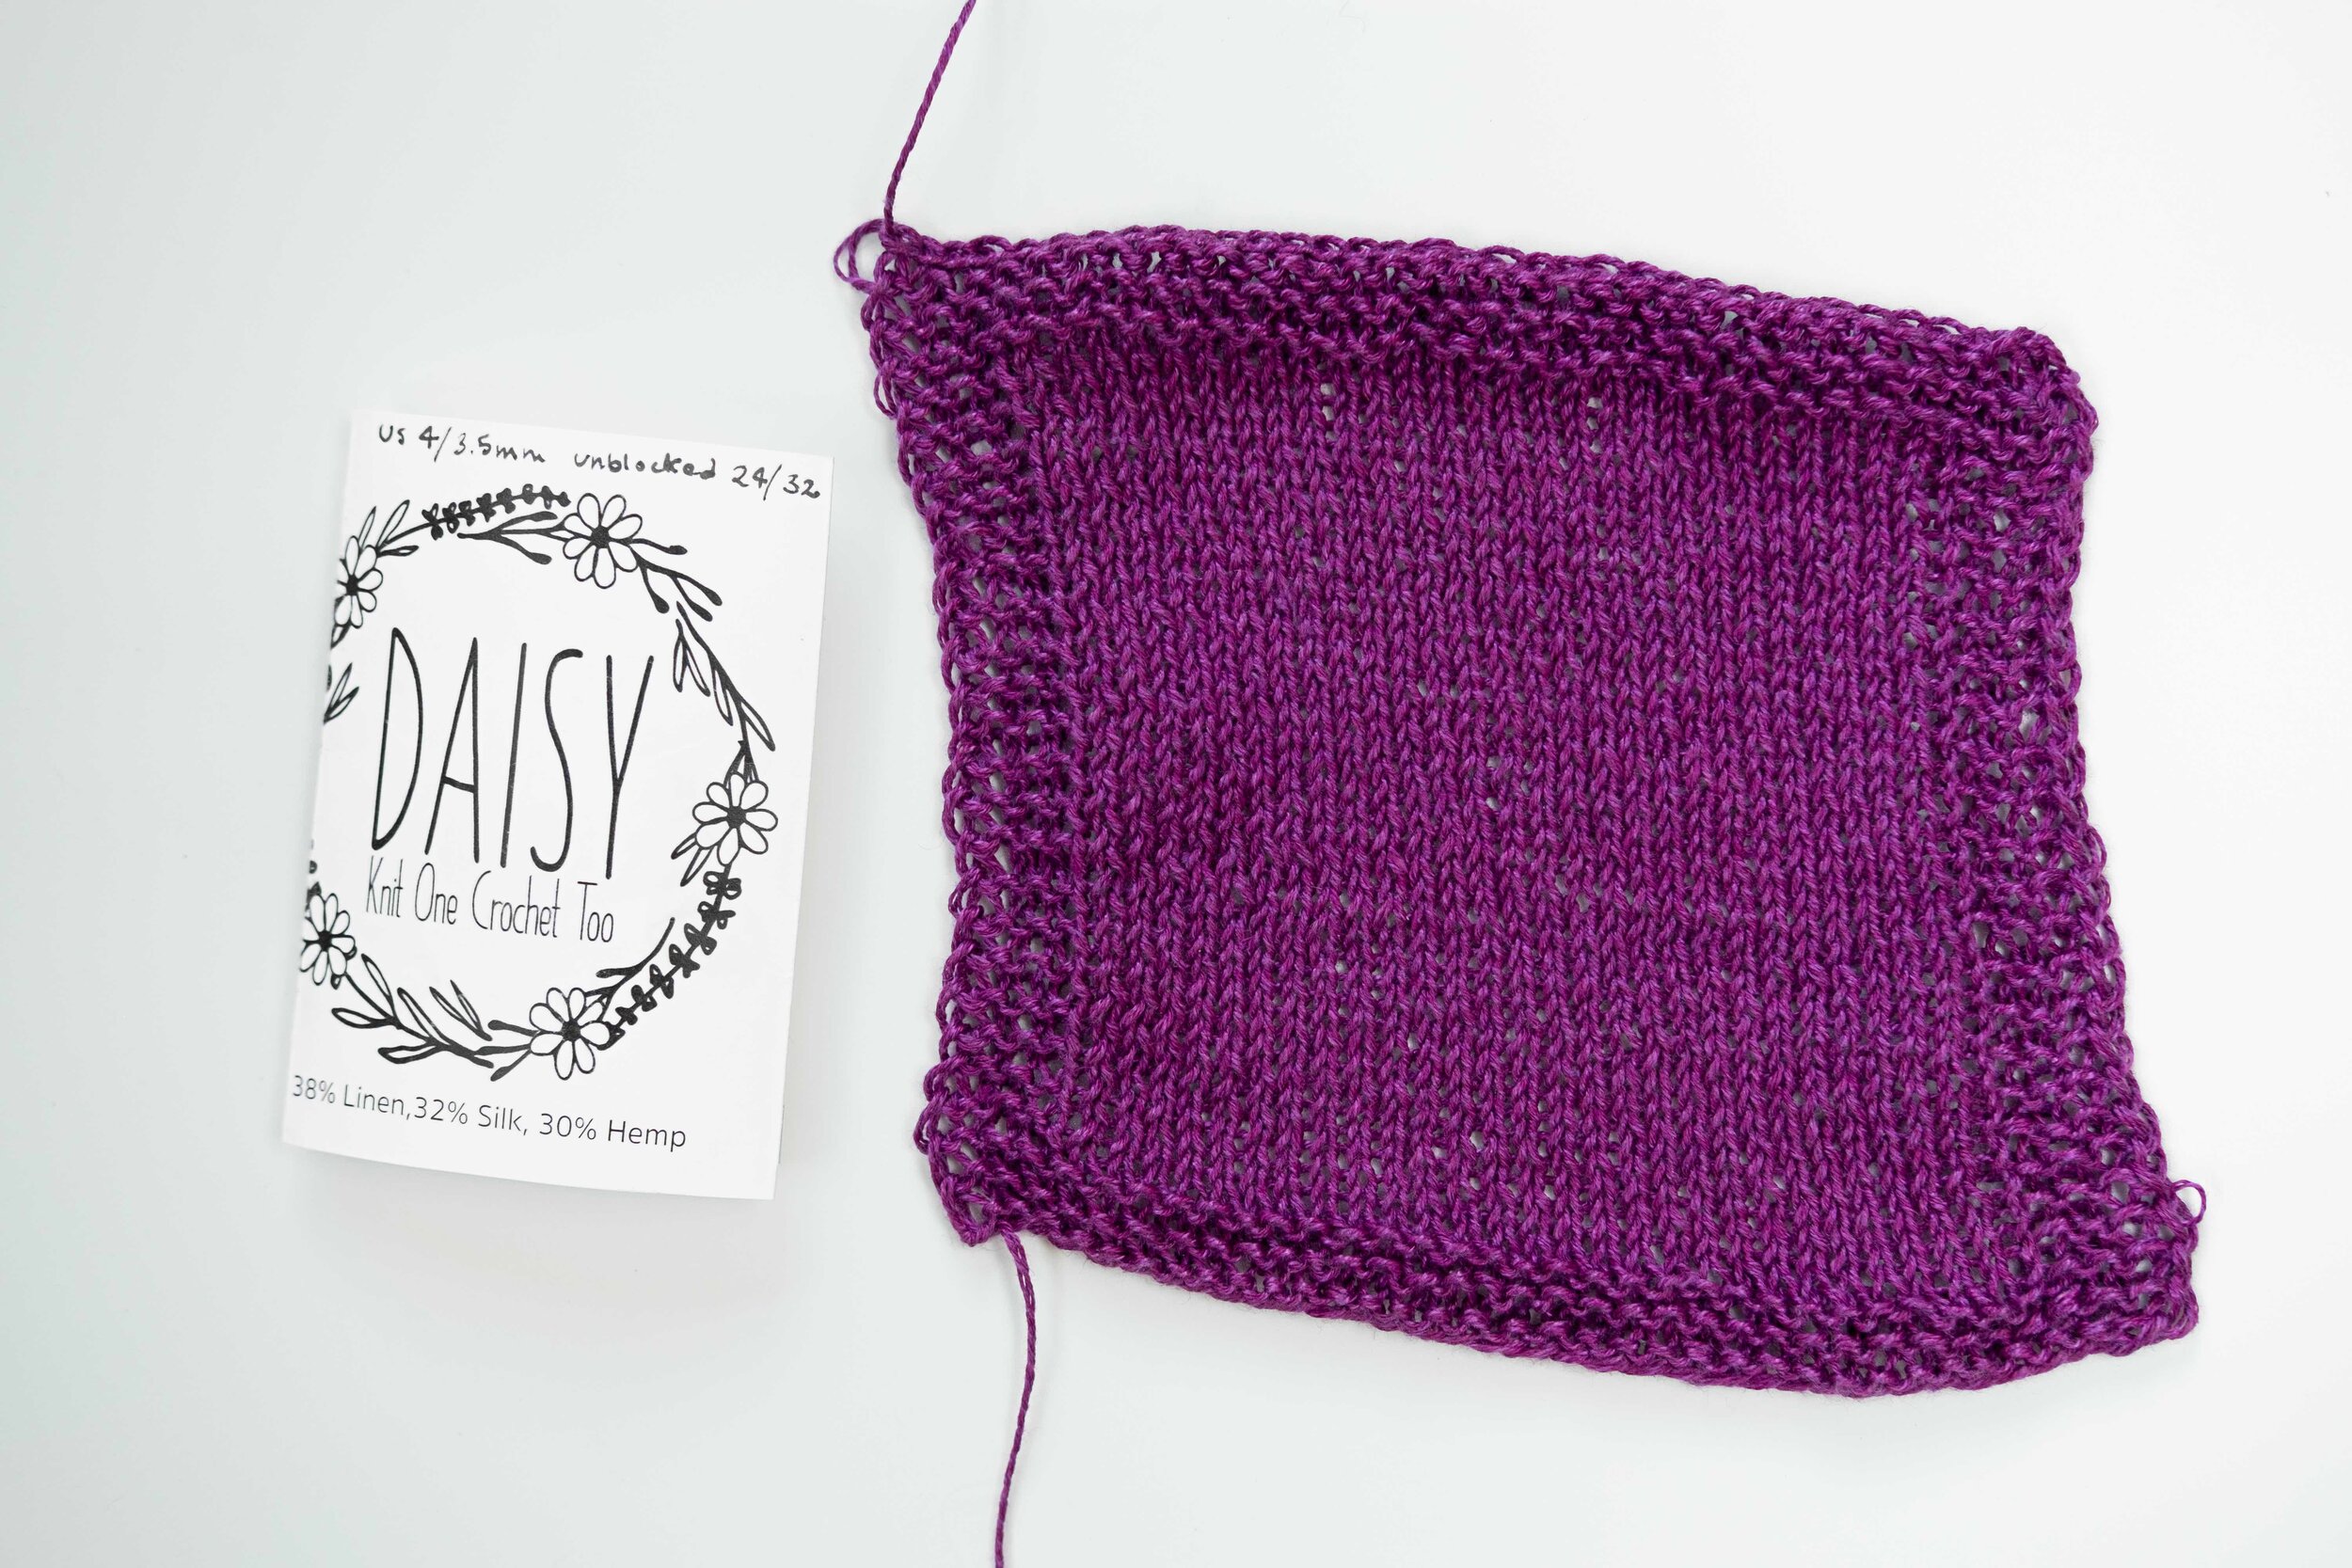 knit-one-crochet-too_daisy-2_small.jpg